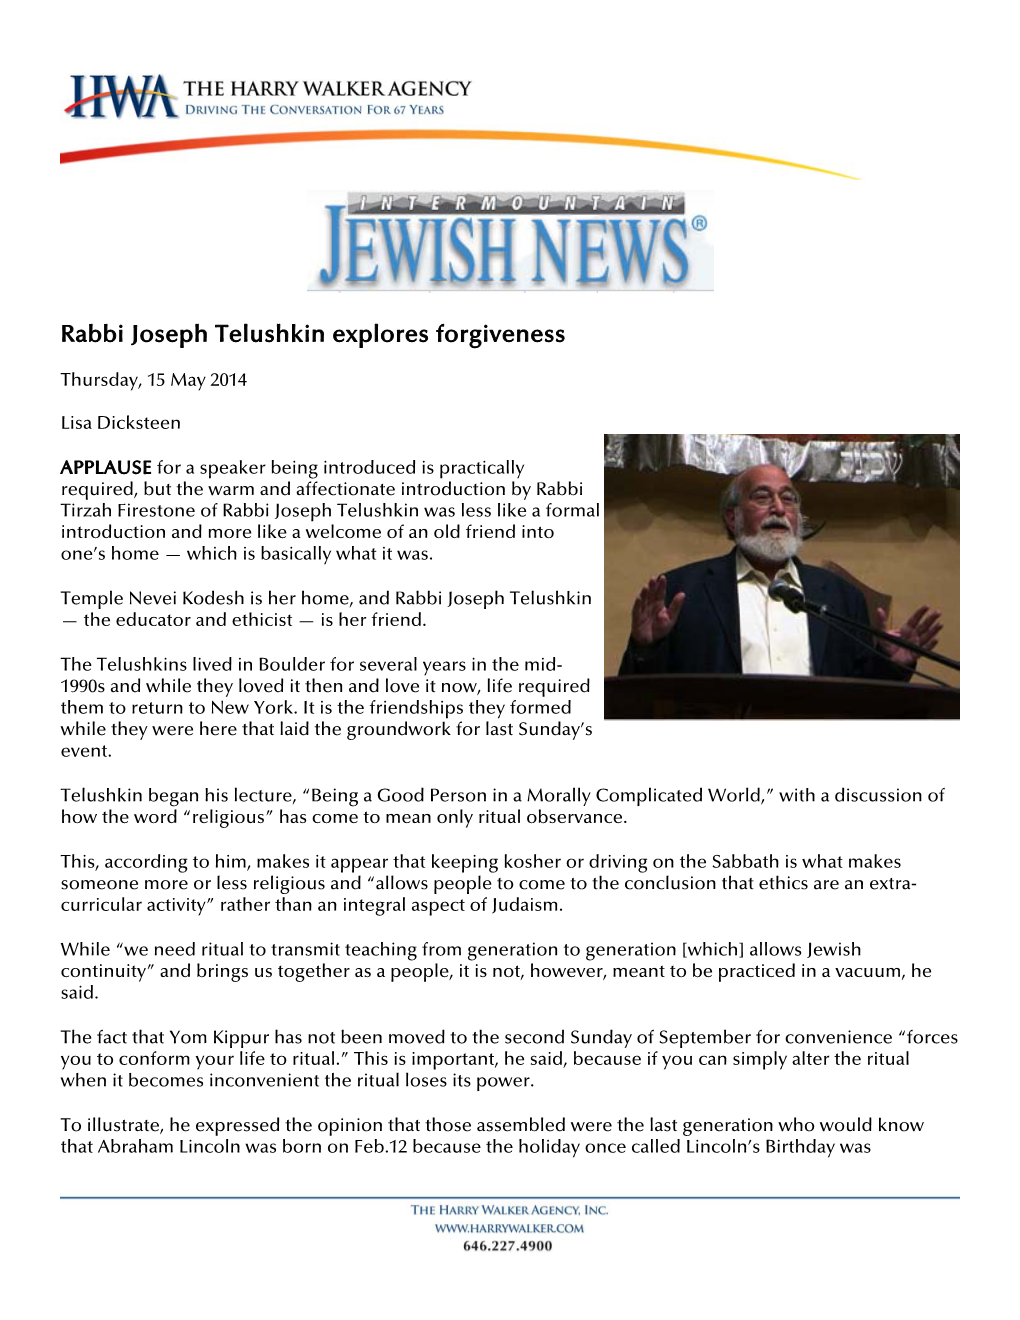 Rabbi Joseph Telushkin Explores Forgiveness